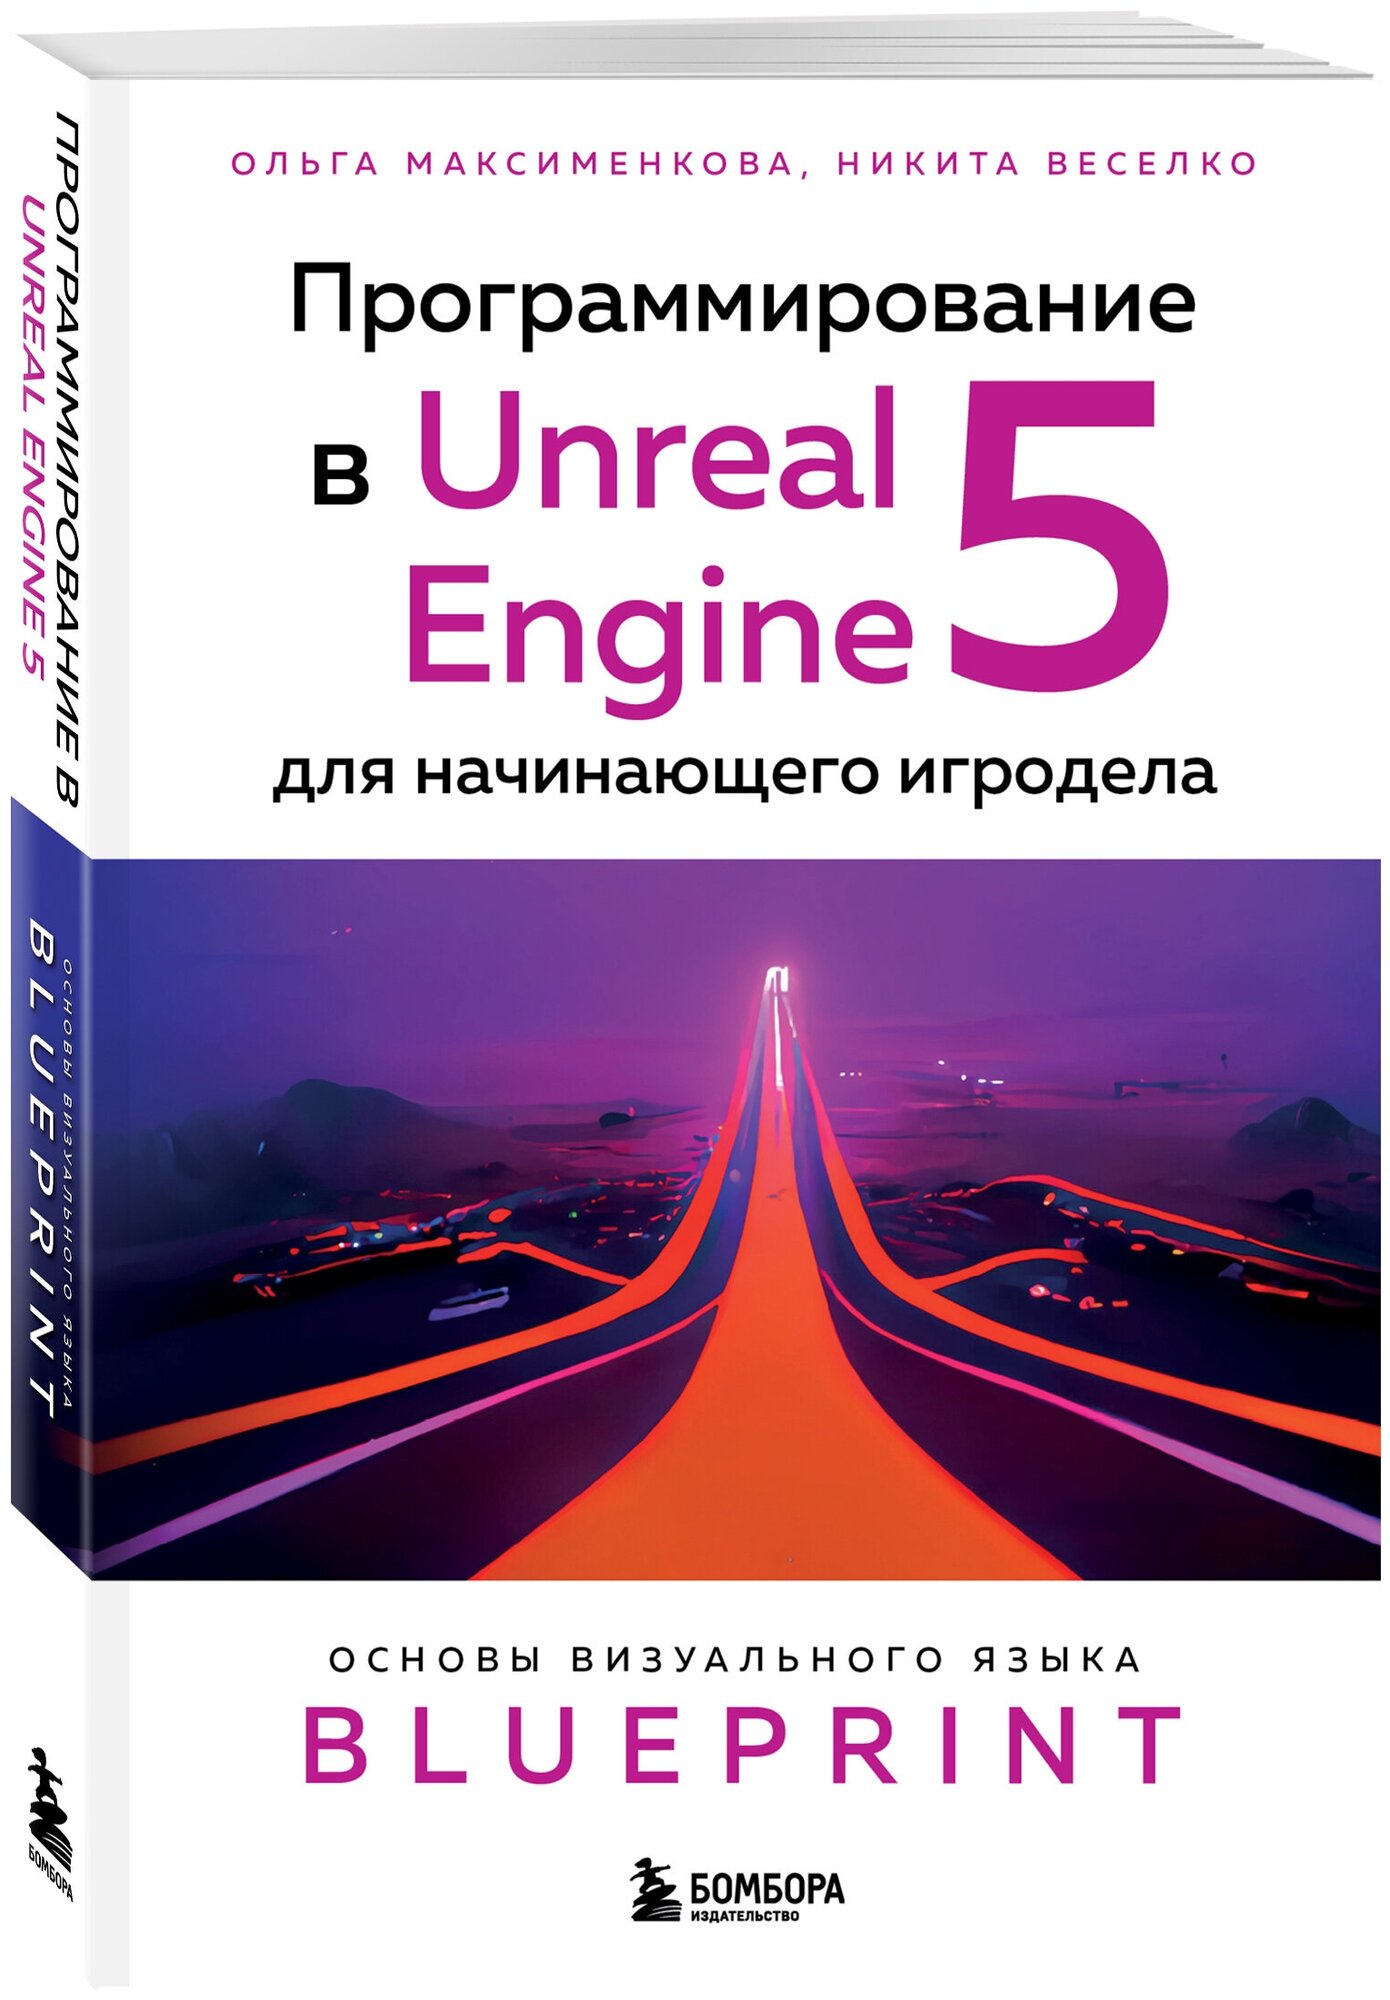 Максименкова О. В, Веселко Н. И. Программирование в Unreal Engine 5 для начинающего игродела. Основы визуального языка Blueprint